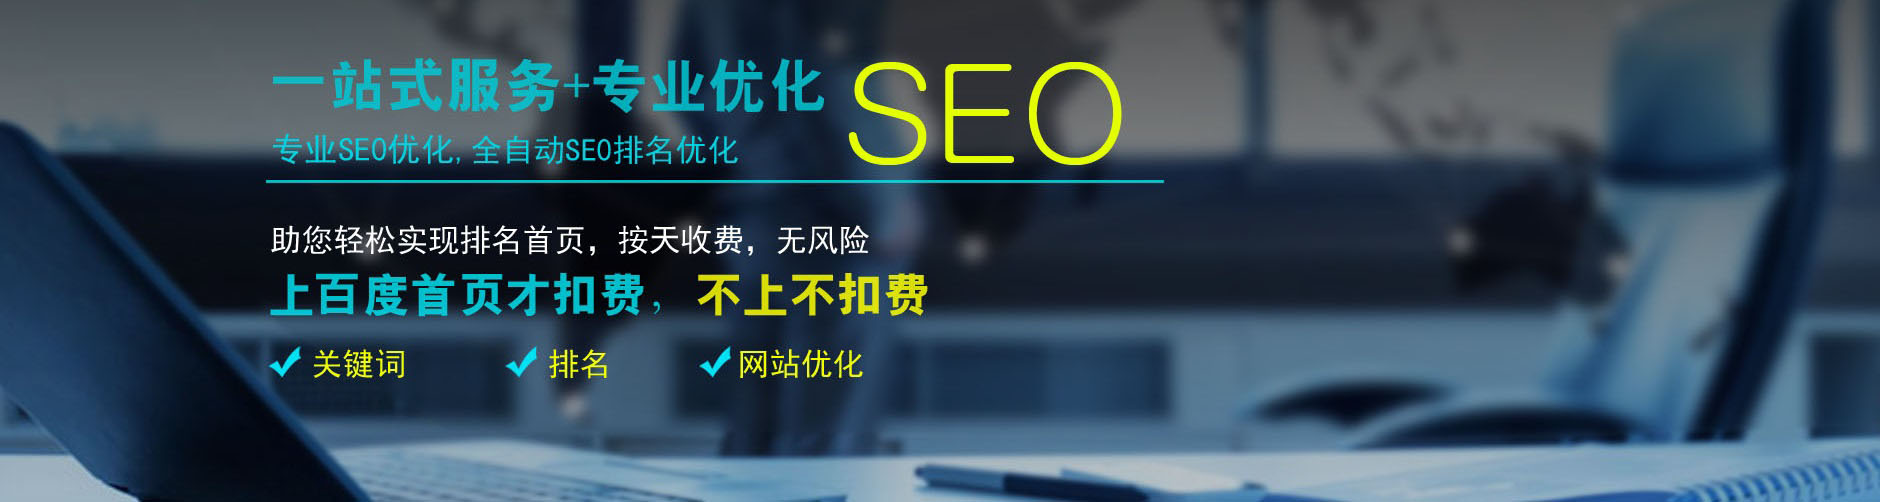 青岛seo优化-网站建设搭建设计-seo外包服务-关键词排名